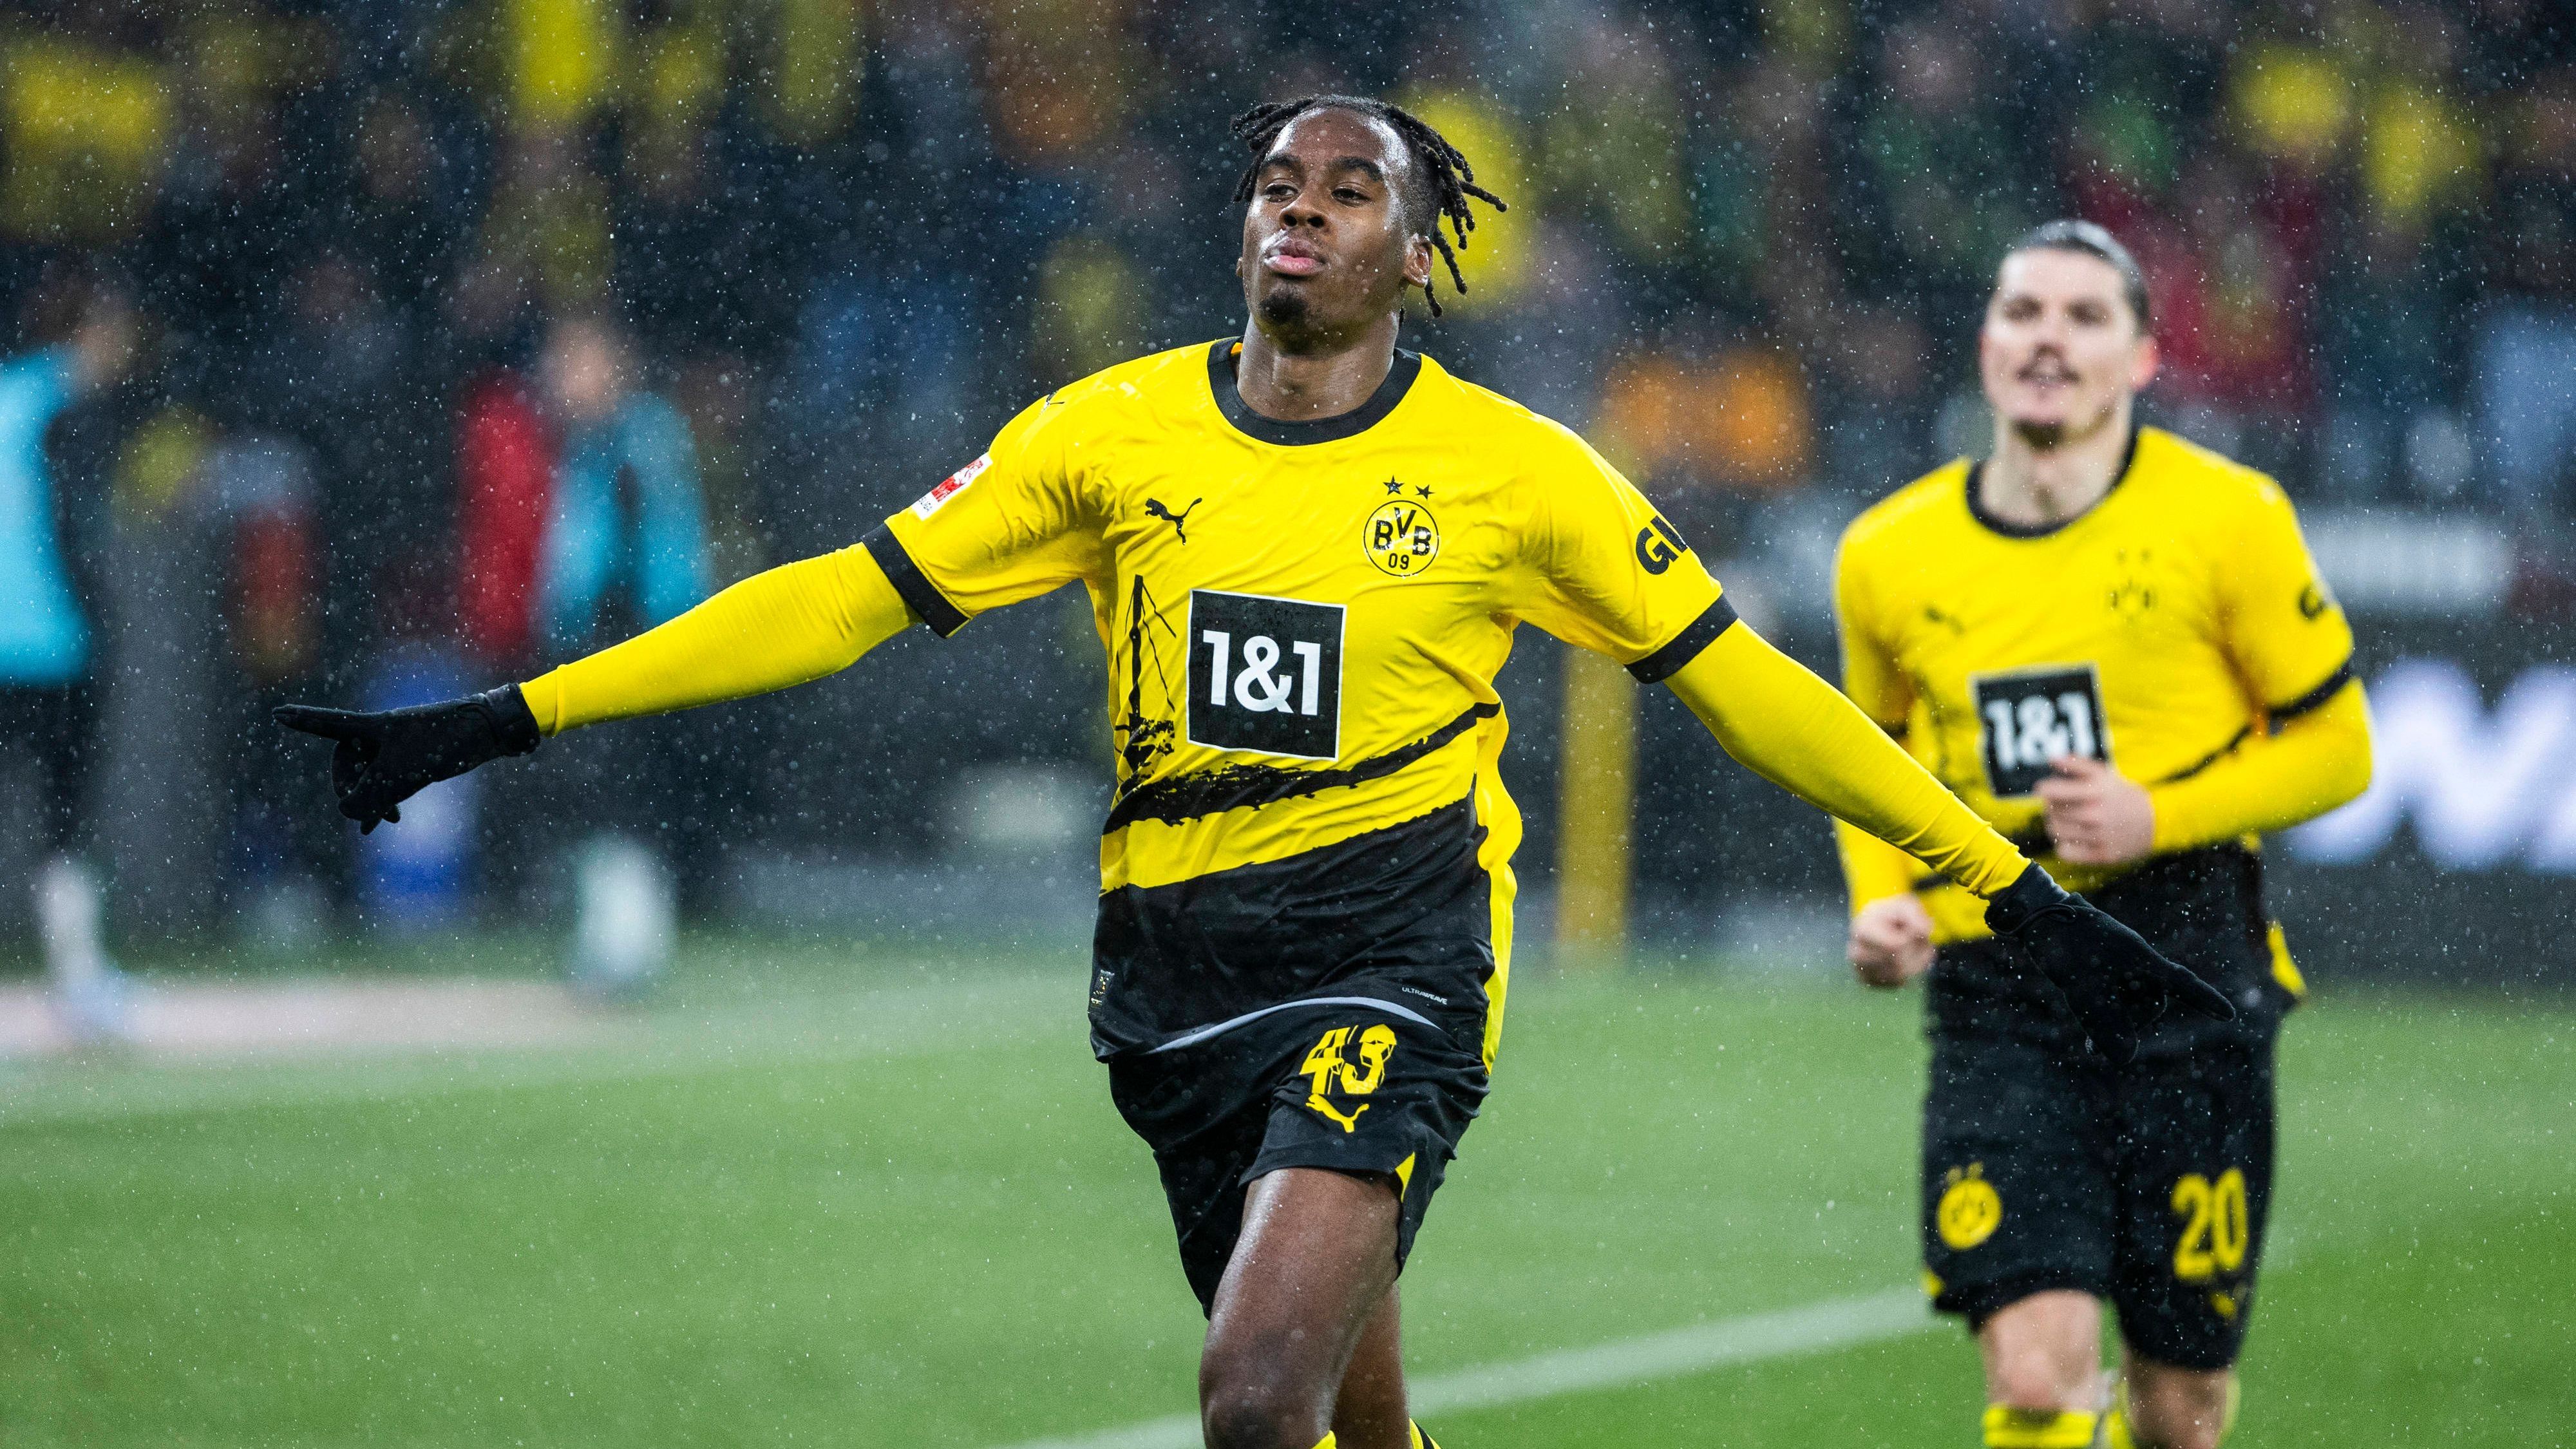 <strong>Borussia Dortmund feiert Comeback-Sieg gegen Gladbach: Die <em>ran</em>-Noten zum Spiel</strong><br>Borussia Dortmund hat den nächsten herben Rückschlag abgewendet und nach einem vor allem in der ersten Halbzeit furiosen Spiel einen wichtigen Sieg eingefahren. Der BVB gewann sein Heimspiel gegen Borussia Mönchengladbach nach 0:2-Rückstand mit 4:2 (3:2). <strong><em>ran</em></strong> hat die Dortmunder Noten zum Spiel